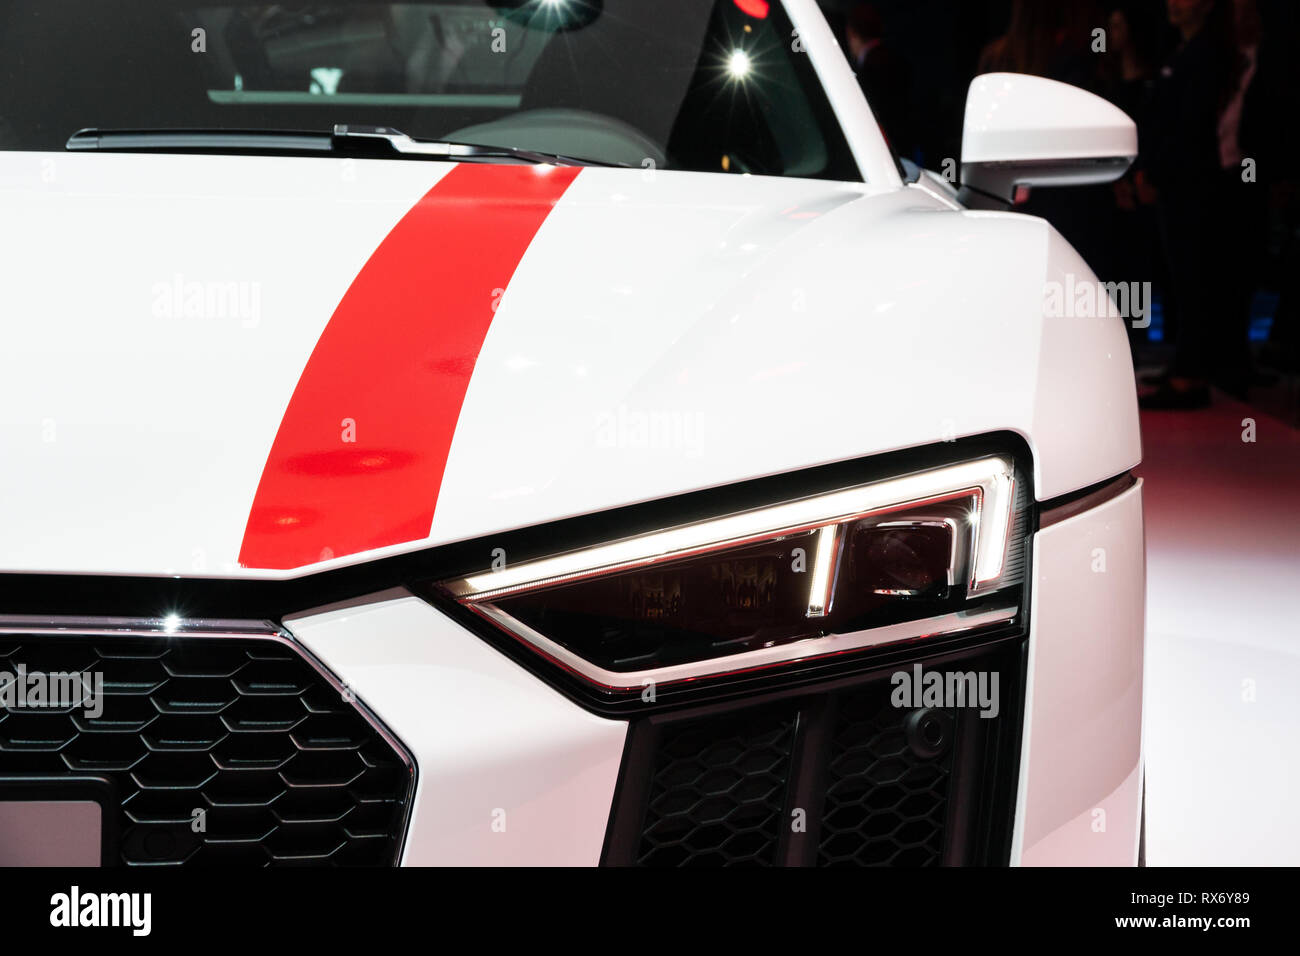 Genève, SUISSE - Le 6 mars 2018 : Audi R8 V10 voiture de sport RWS présentées lors de la 88e Salon International de l'Automobile de Genève. Banque D'Images